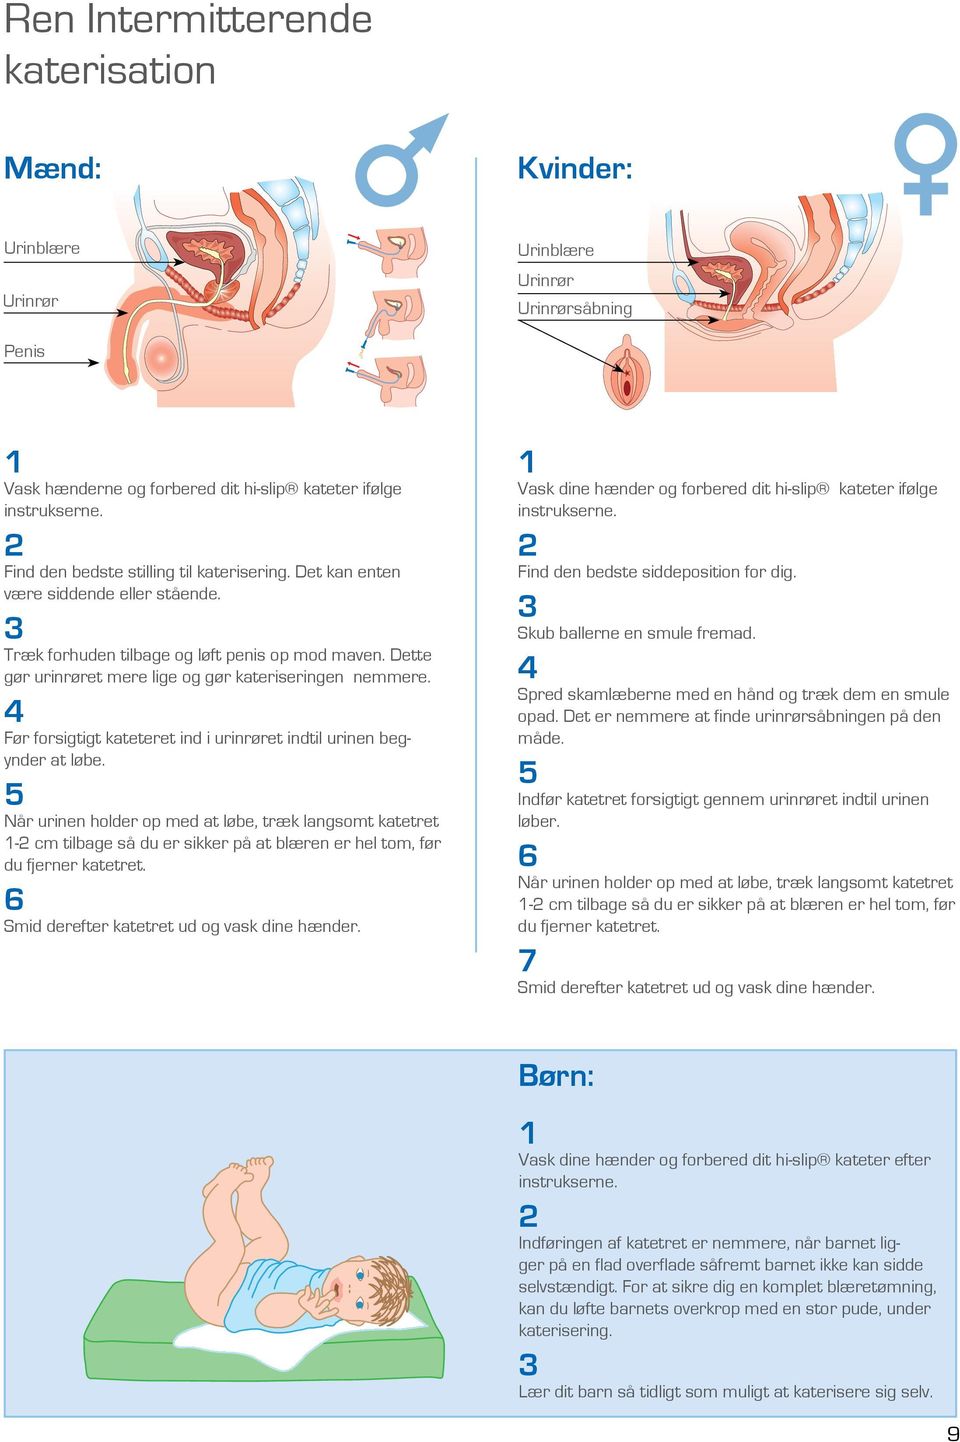 4 Før forsigtigt kateteret ind i urinrøret indtil urinen begynder at løbe.